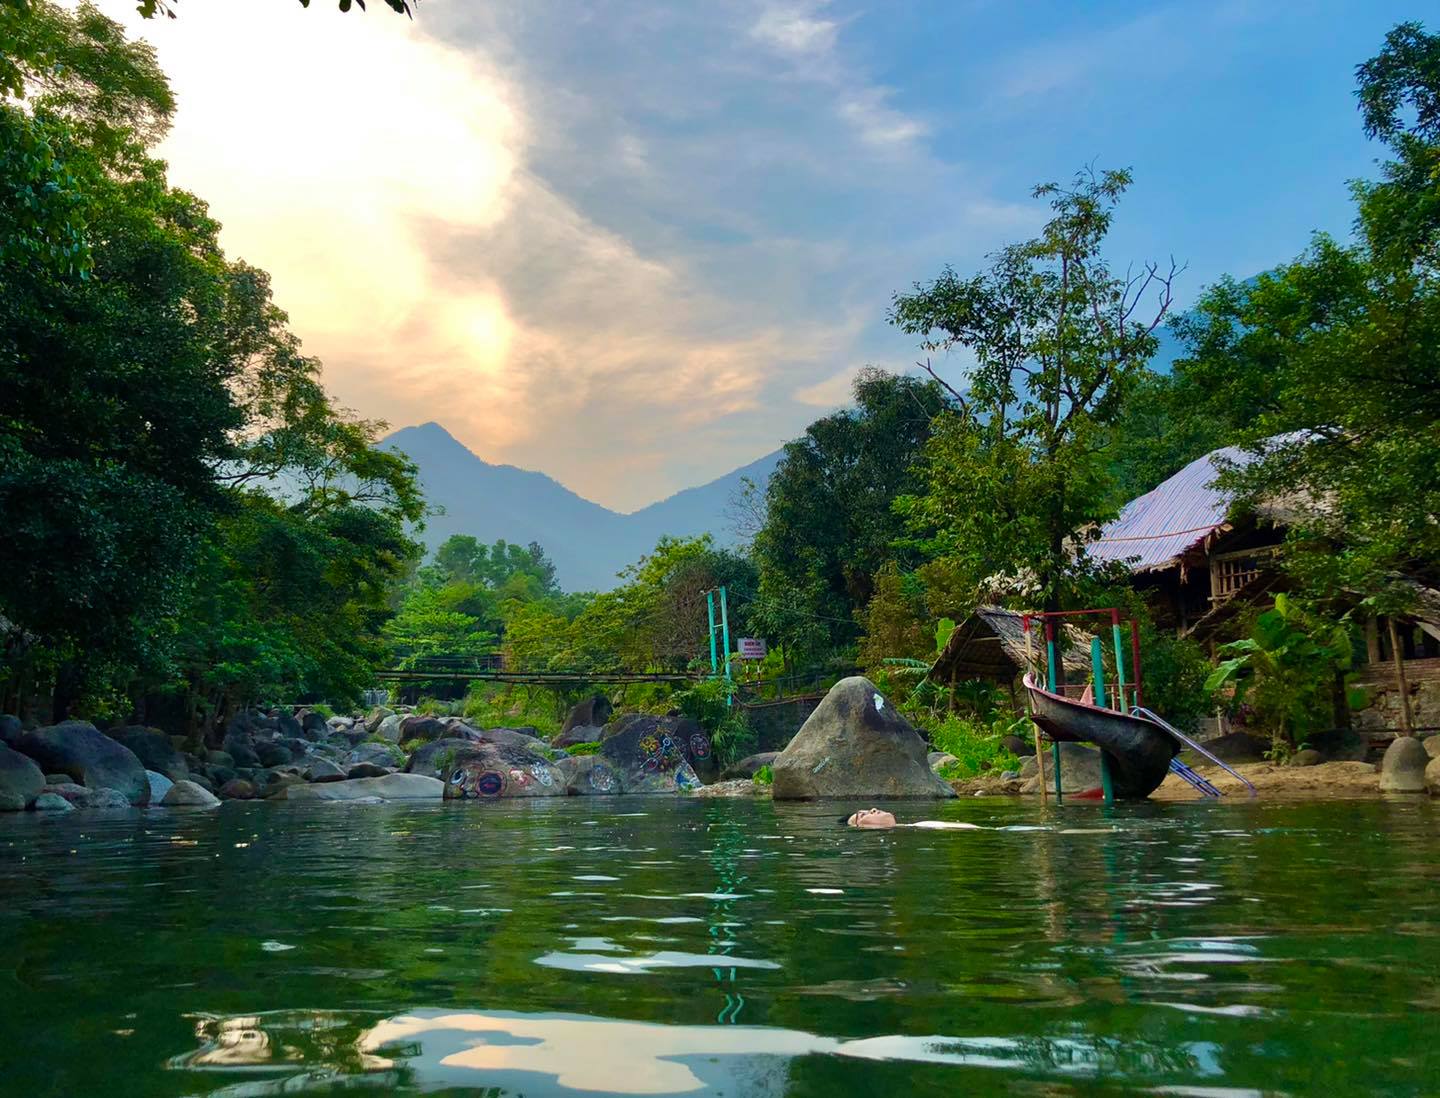 Khu du lịch Suối Lương Đà Nẵng – Vẻ đẹp trữ tình nên thơ dưới chân đèo Hải Vân